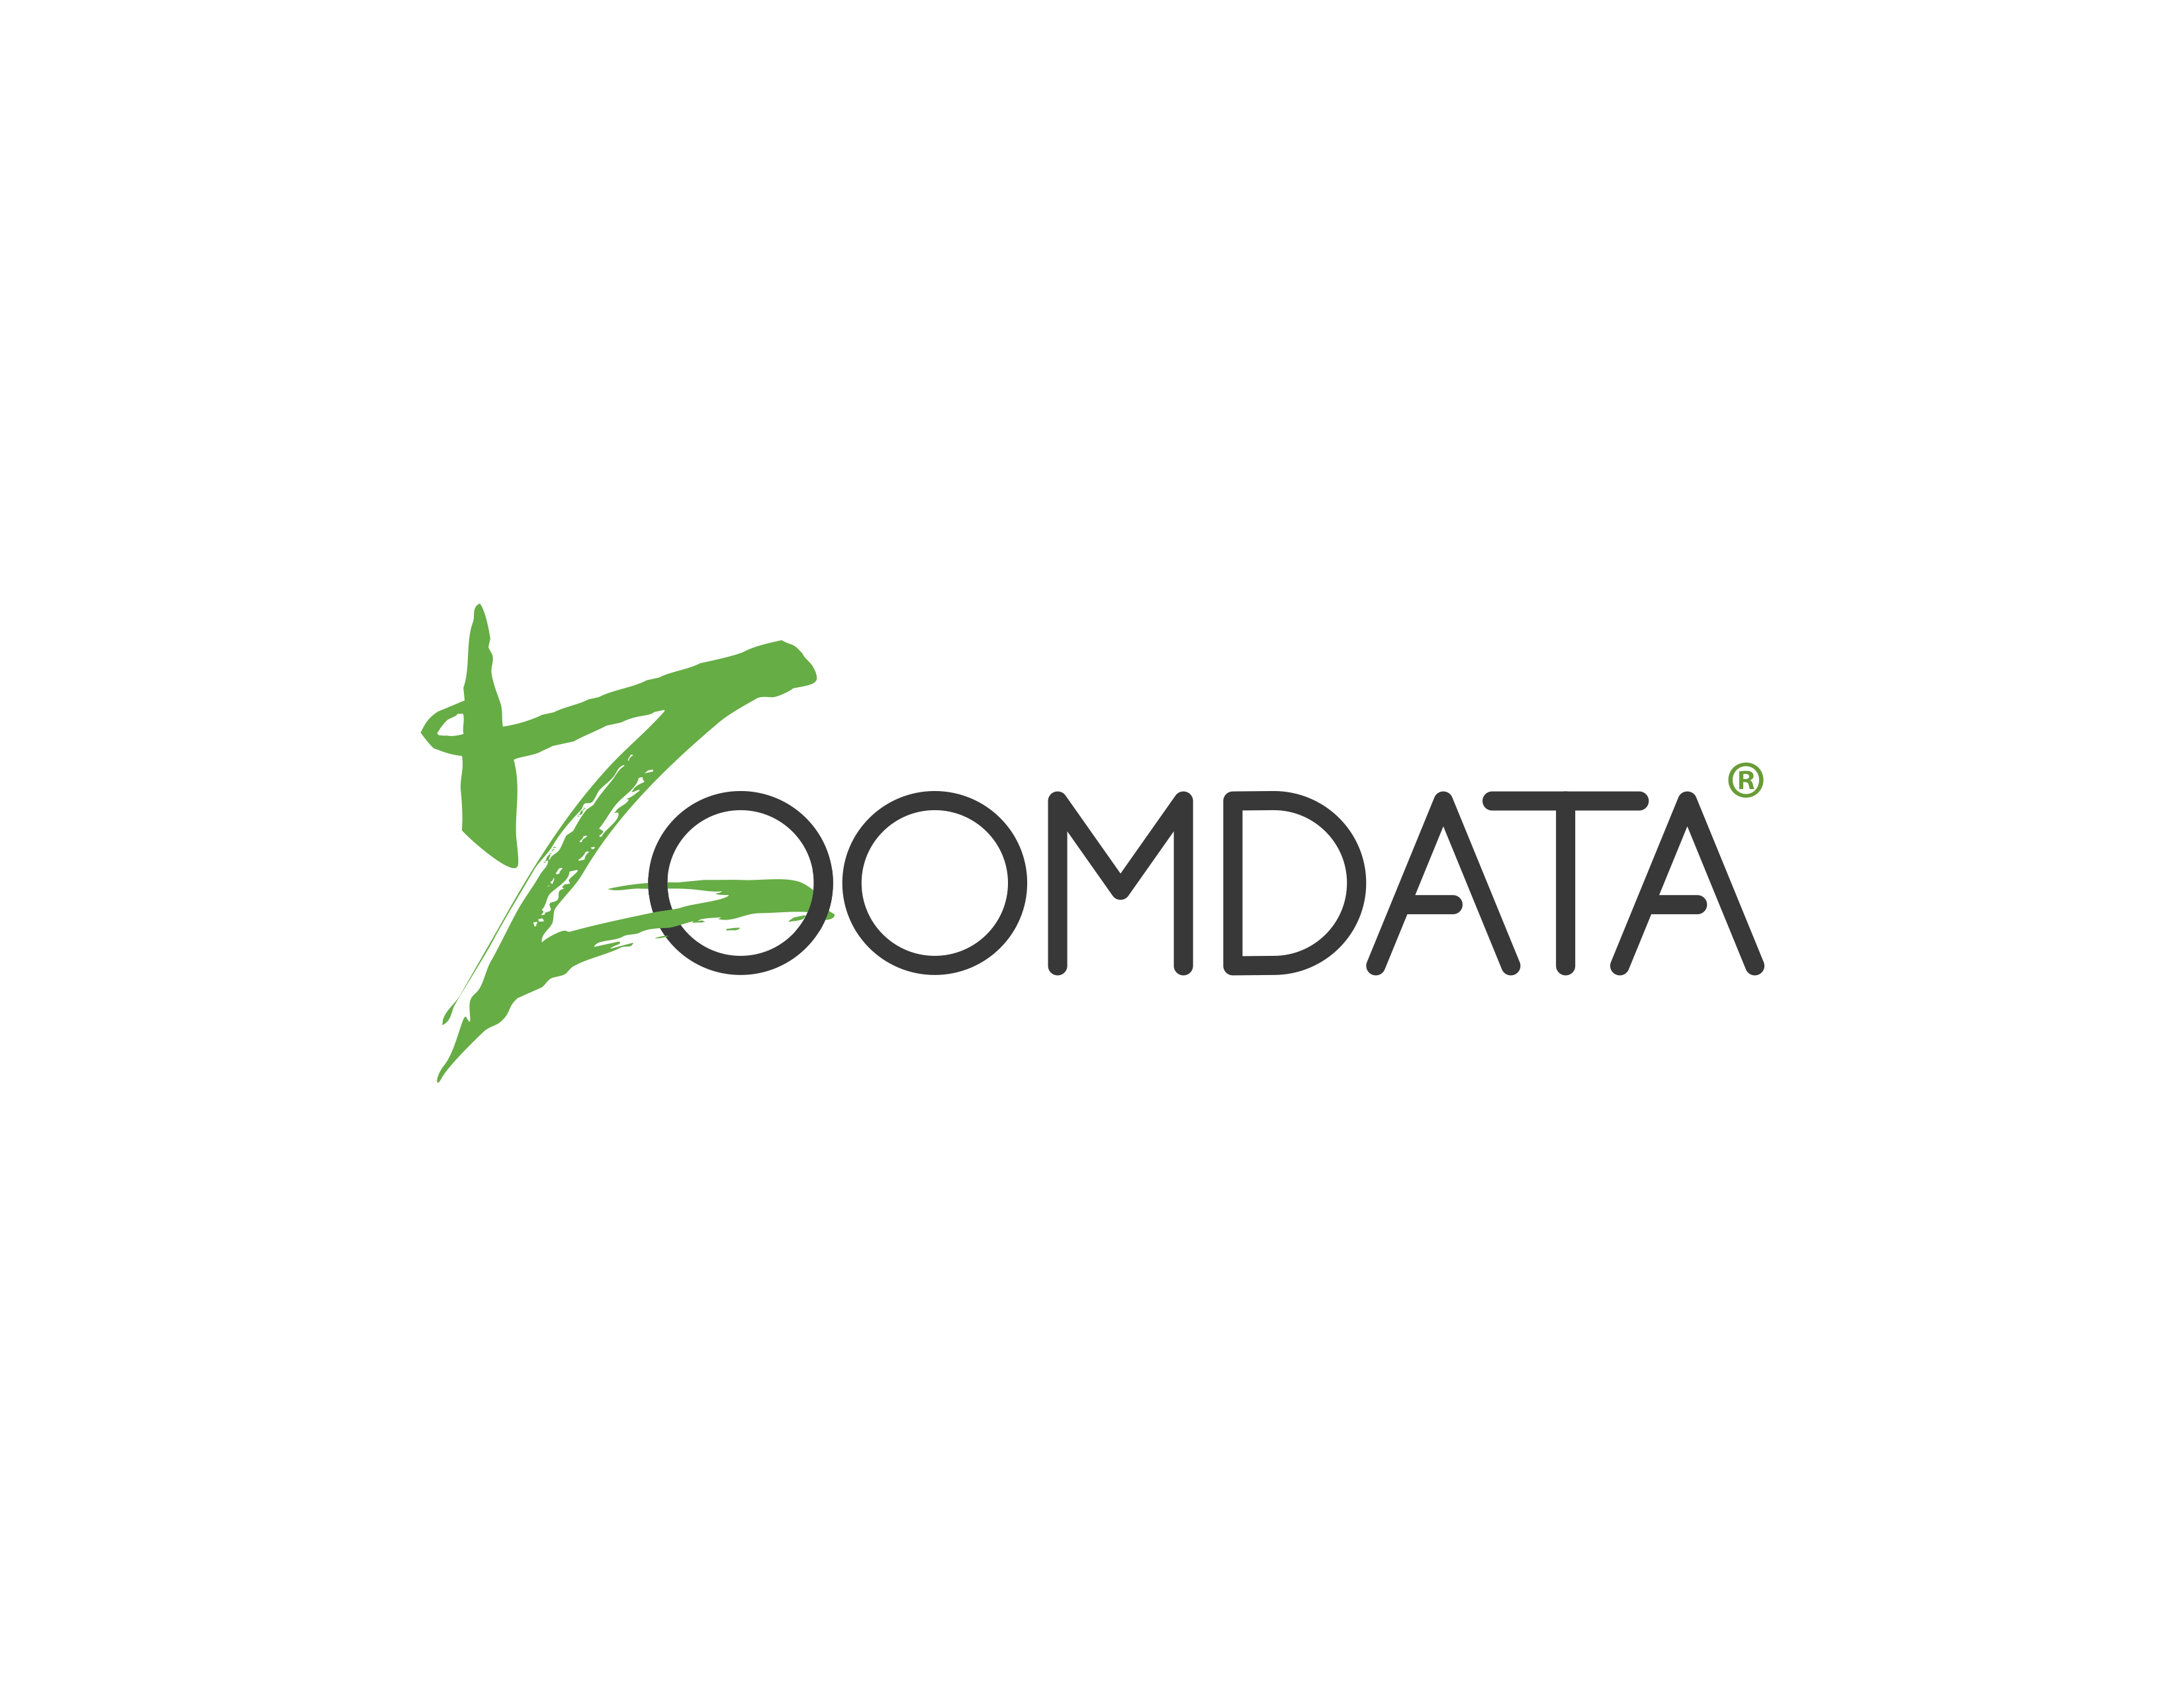 Zoomdata Opens New J